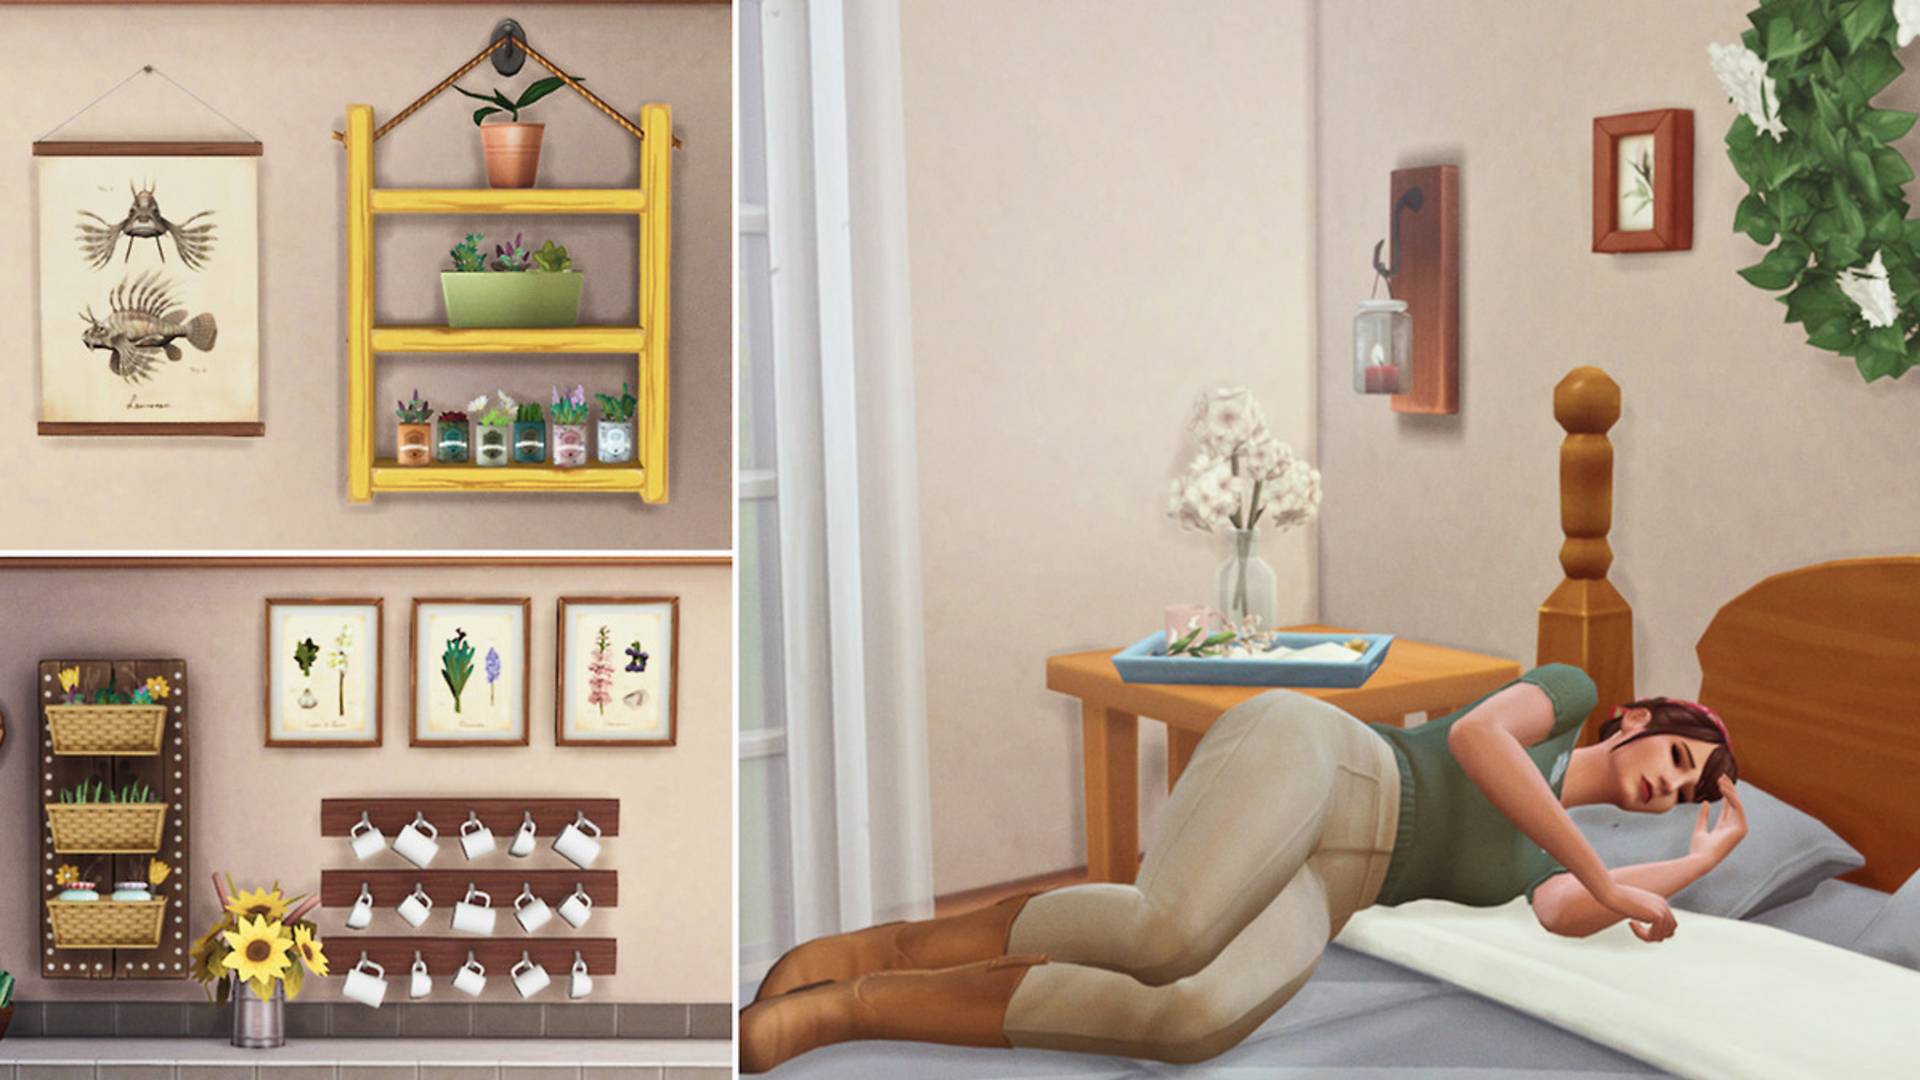 Sims 4 CC: contenido personalizado que incluye marcos para fotos, una bandeja de desayuno, un portavasos flotante y jardineras.